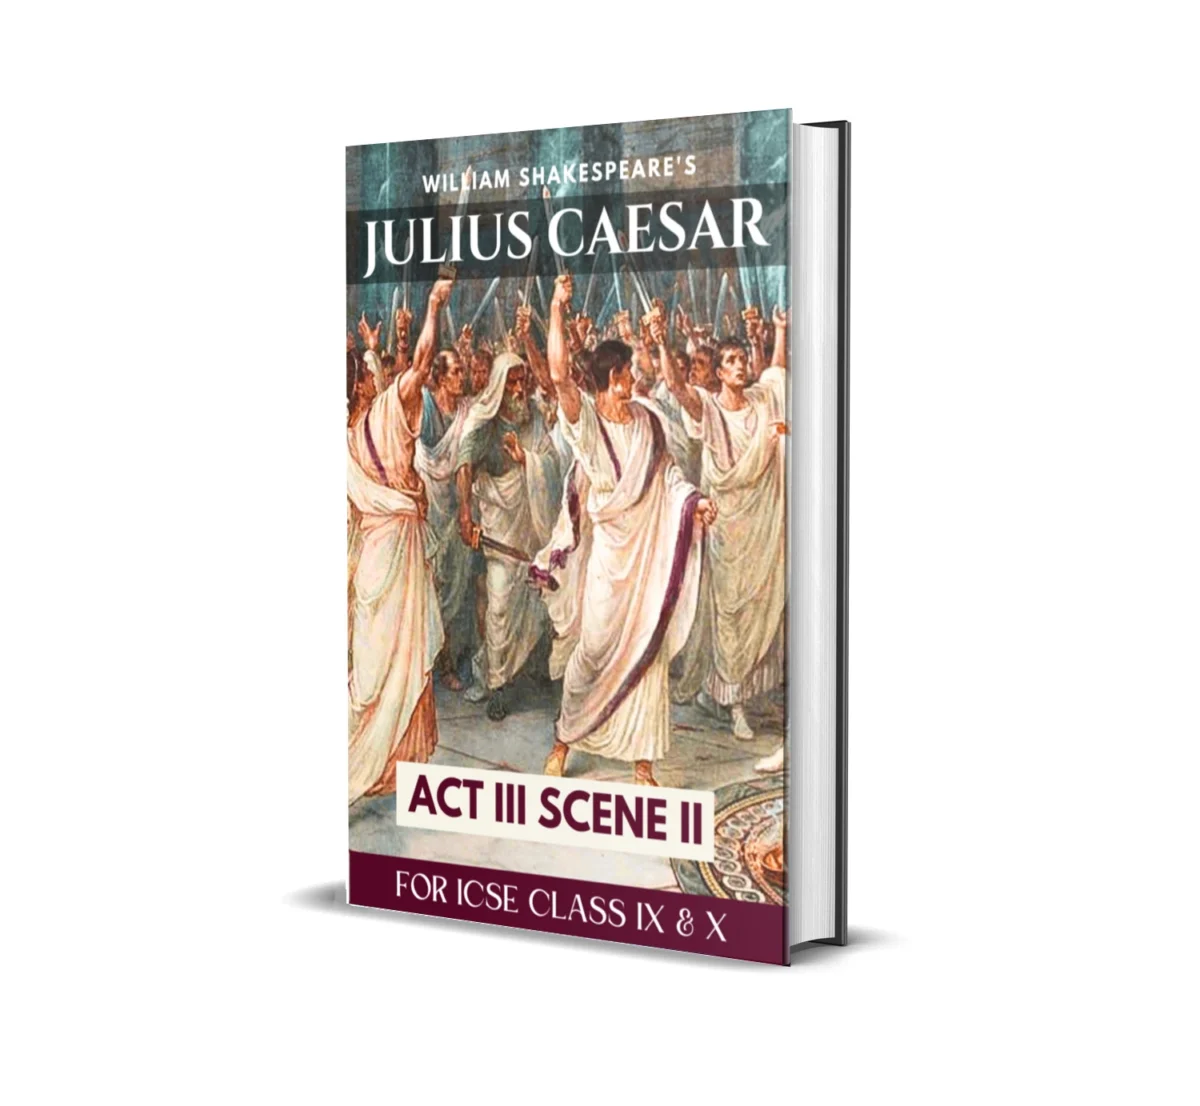 julius caesar act 3 scene 2